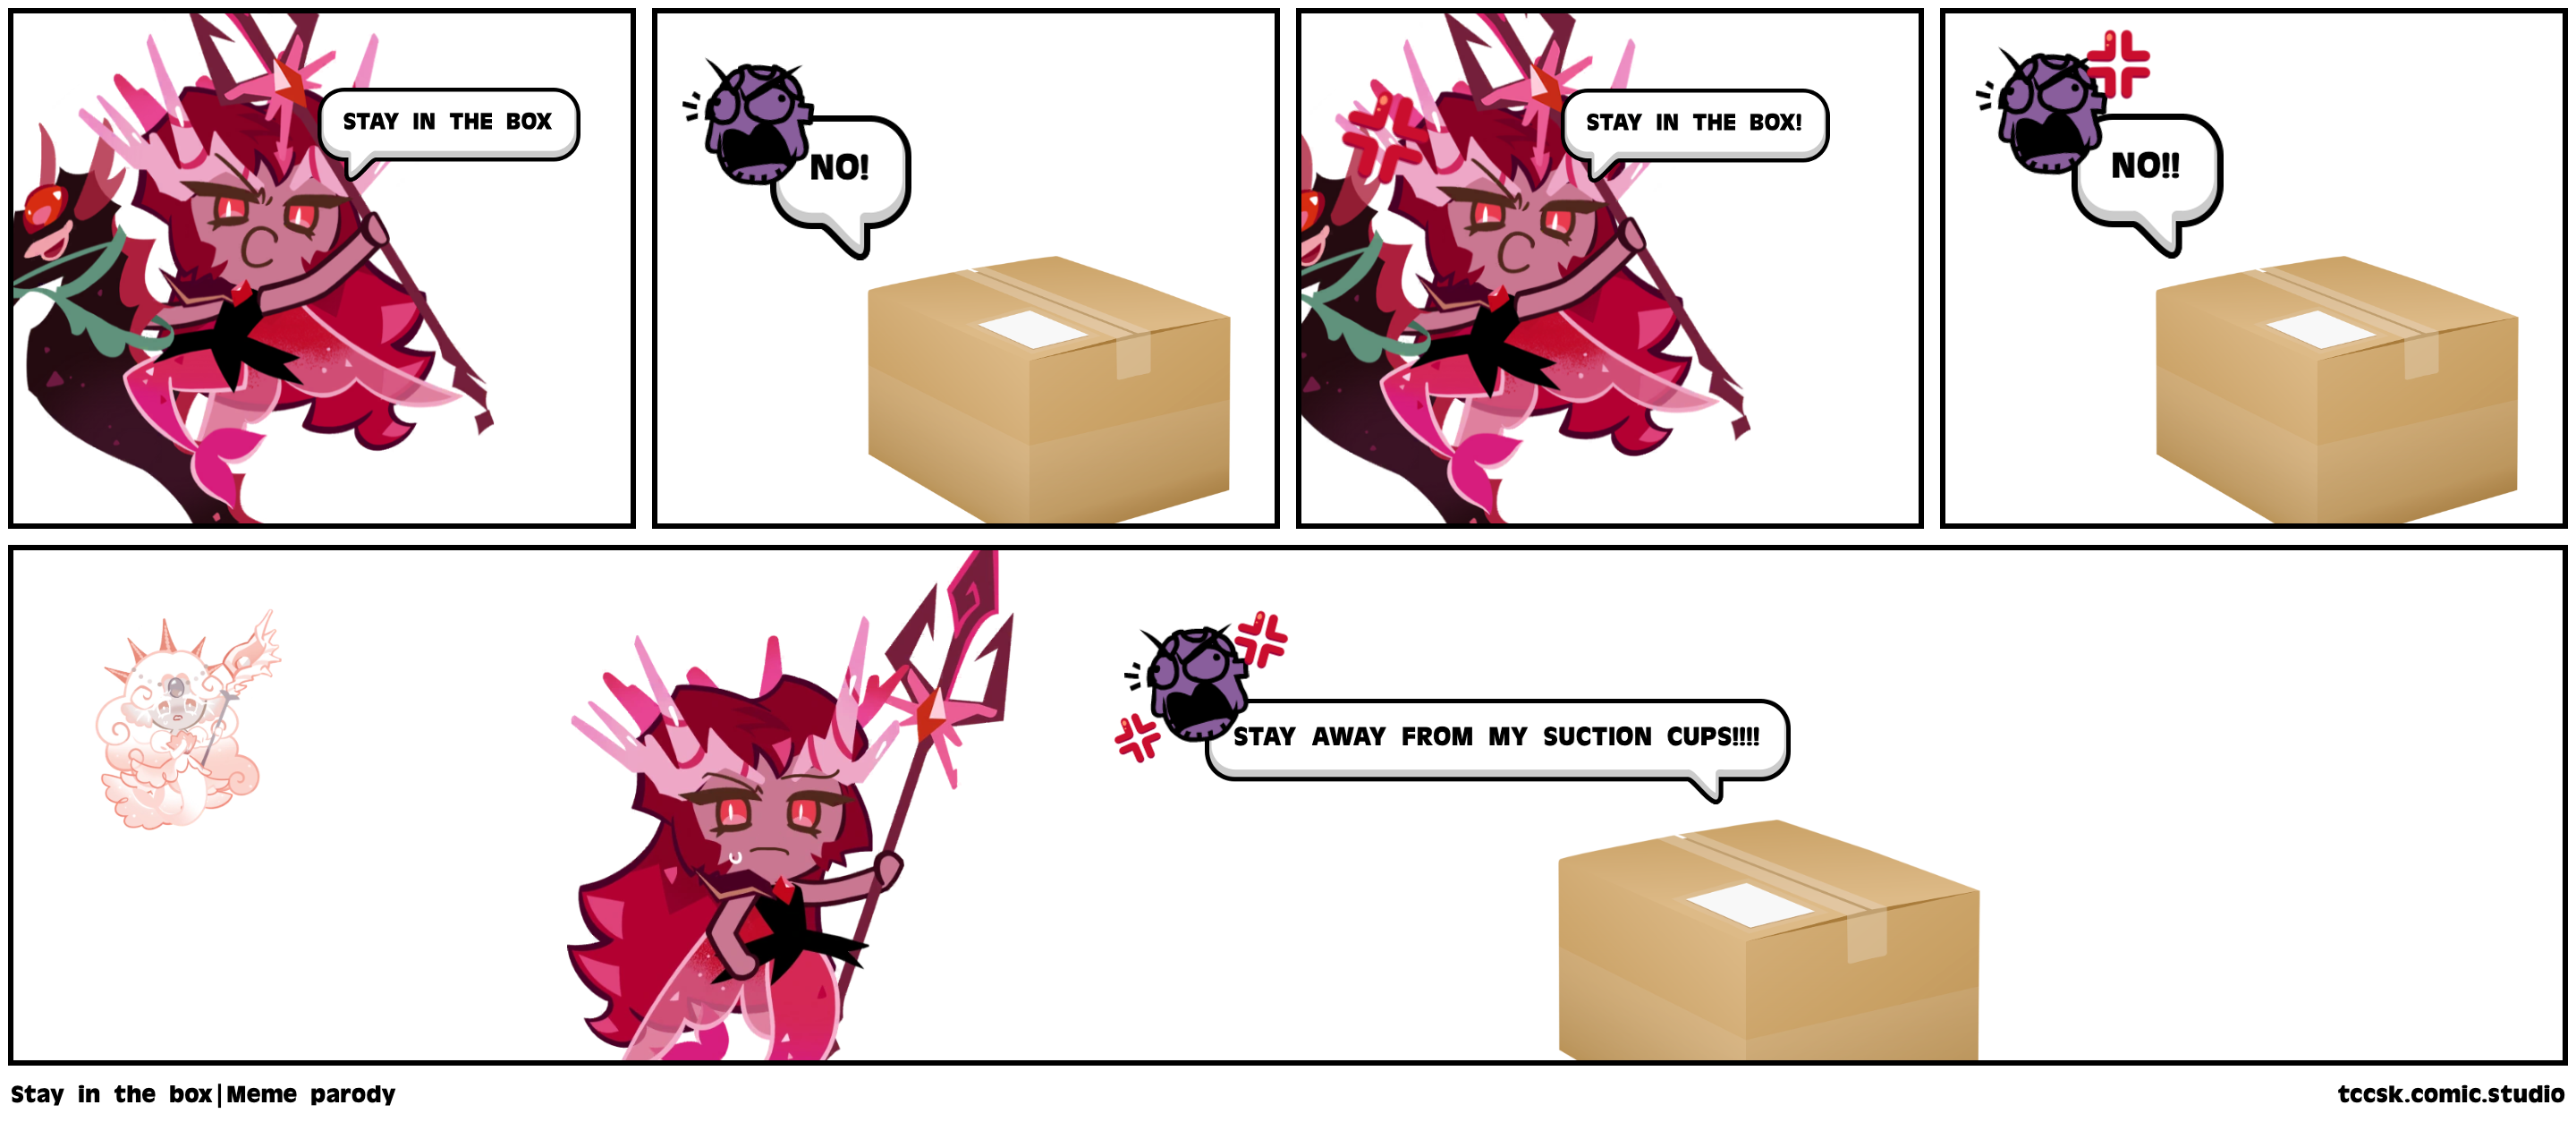 Stay in the box|Meme parody